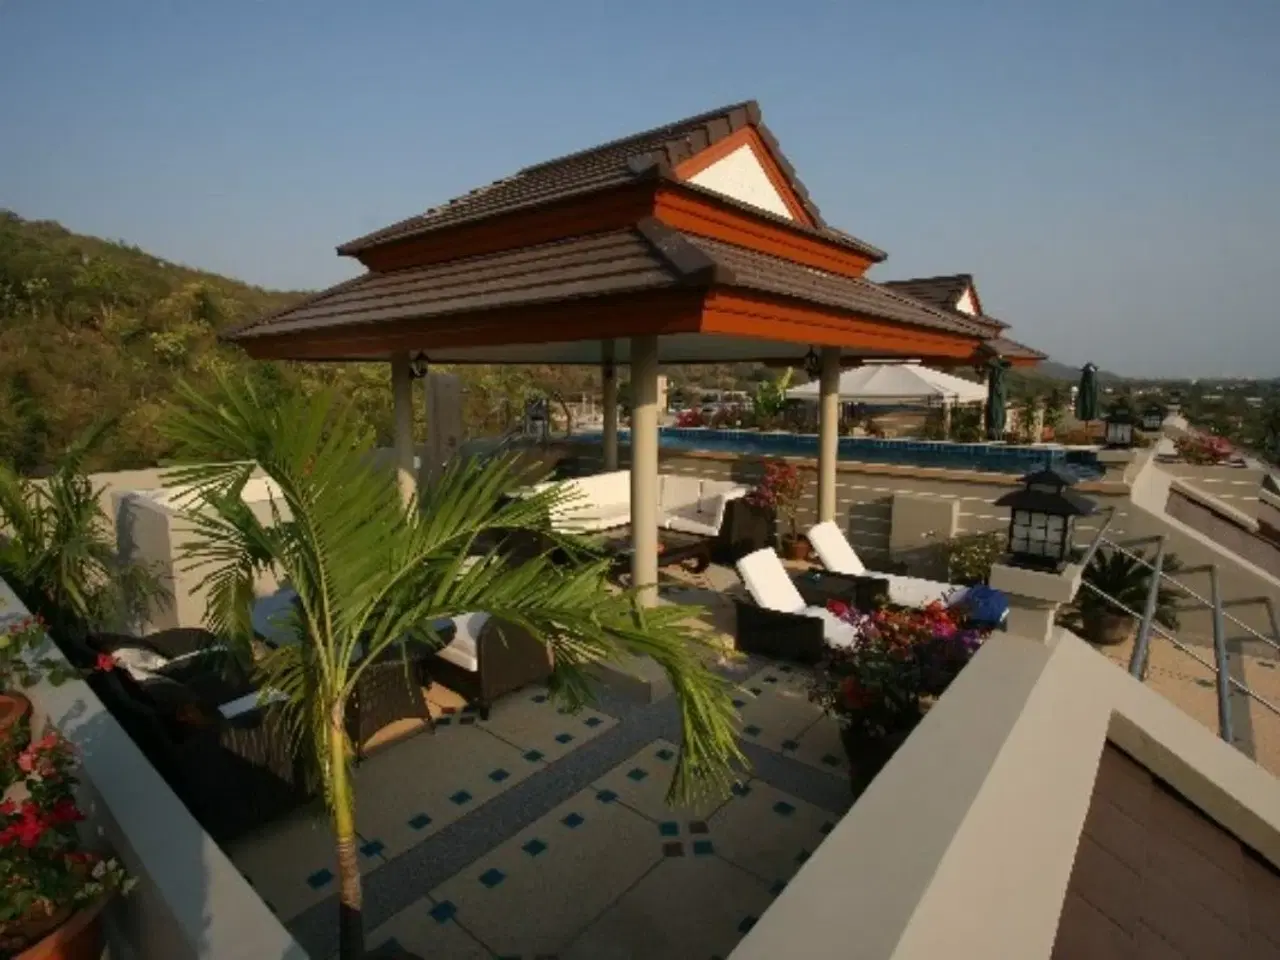 Billede 1 - Lej bolig i Hua Hin Thailand, Penthouse-lejlighed med stor tagterrasse med egen swimmingpool og stor